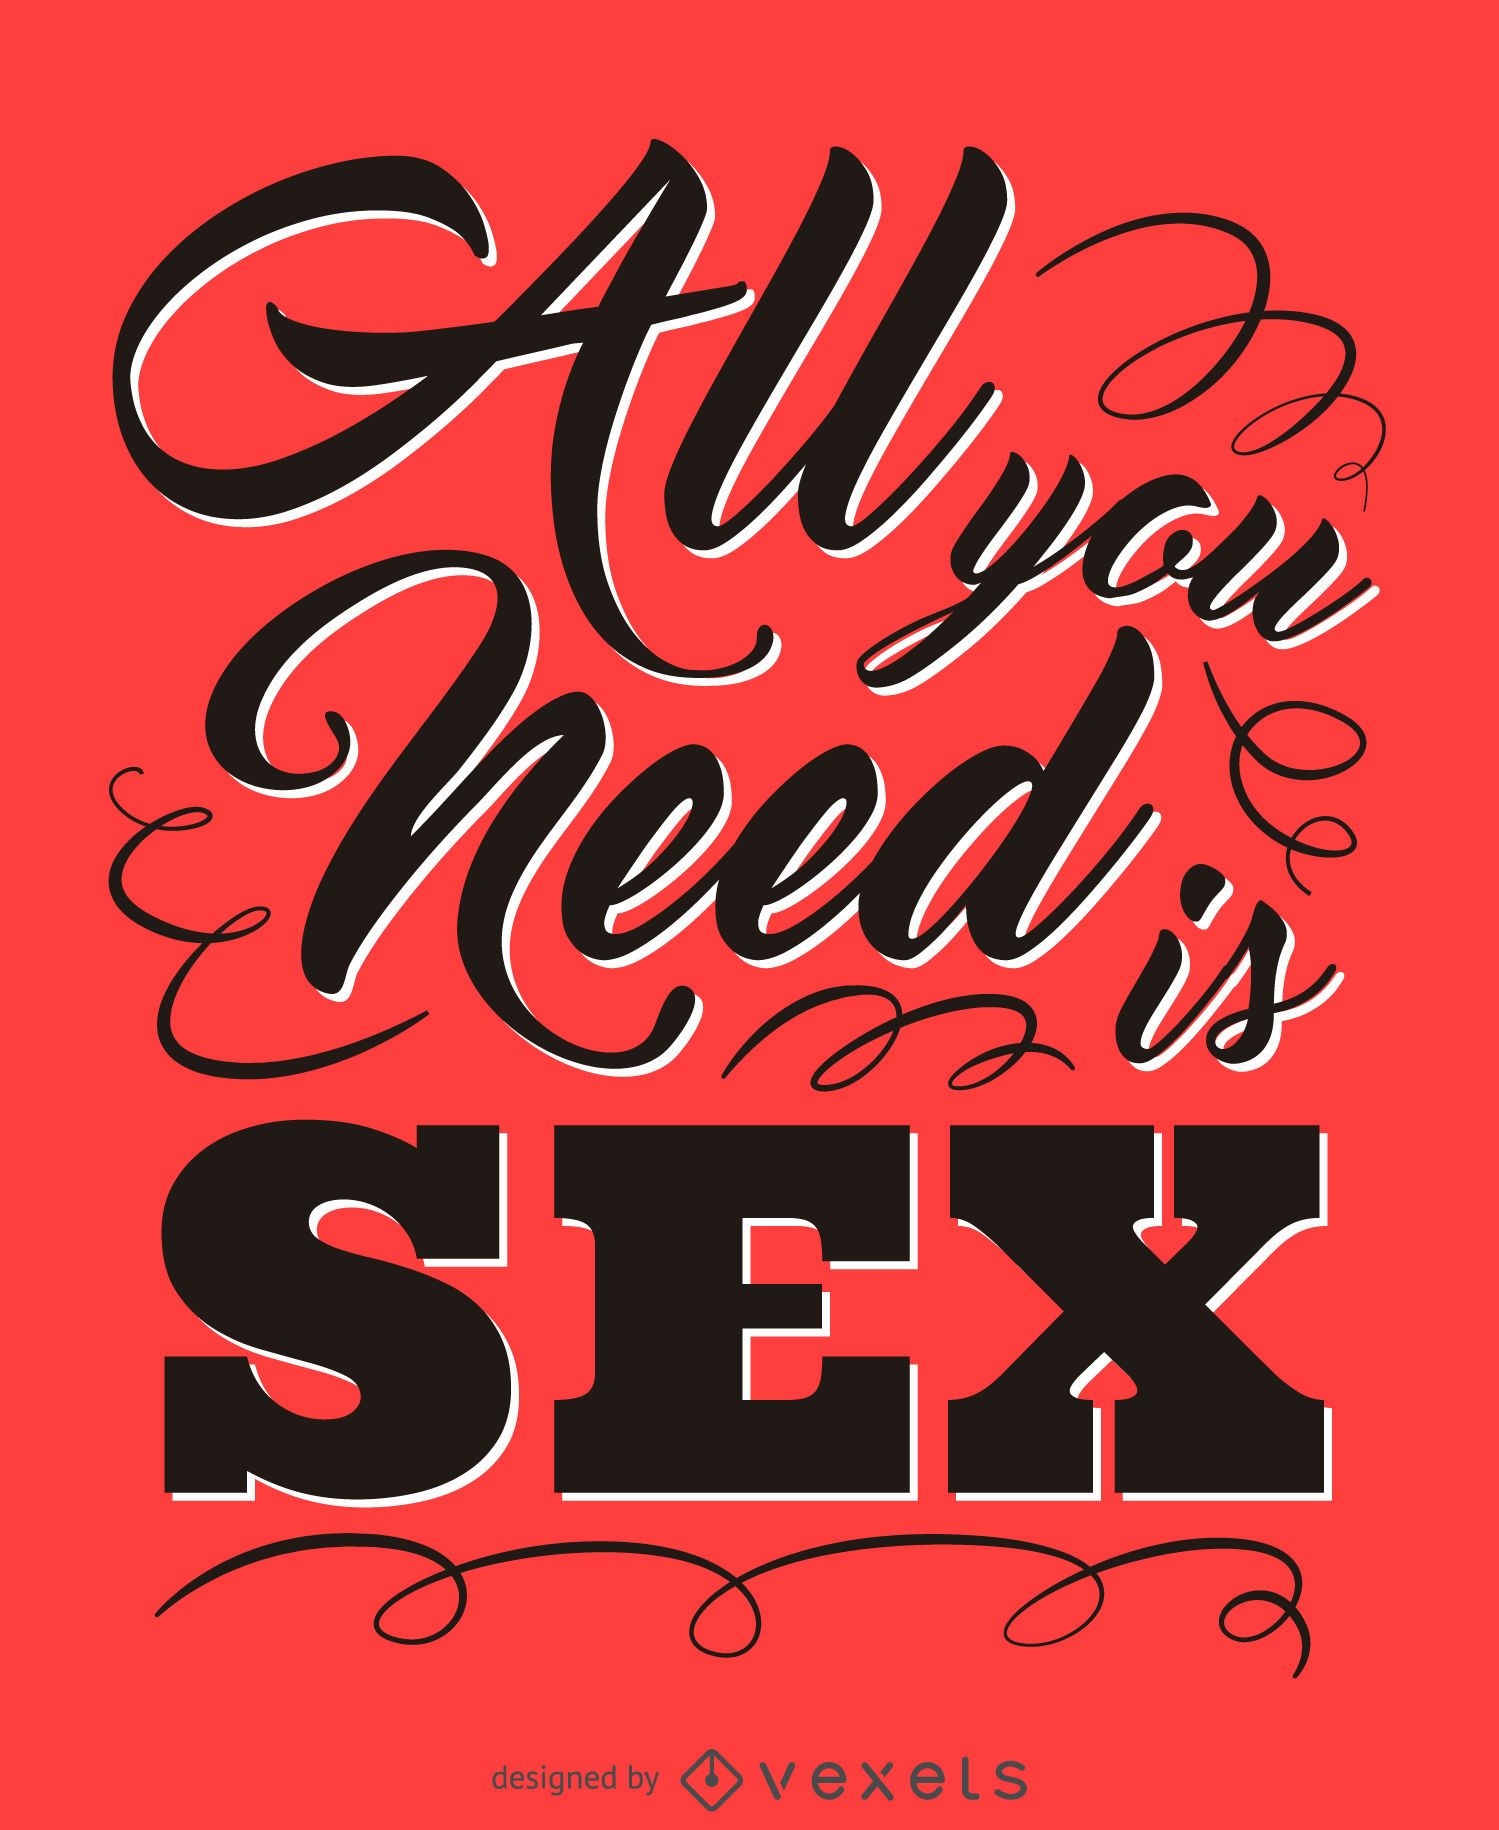 Todo lo que necesitas es una cita sexual